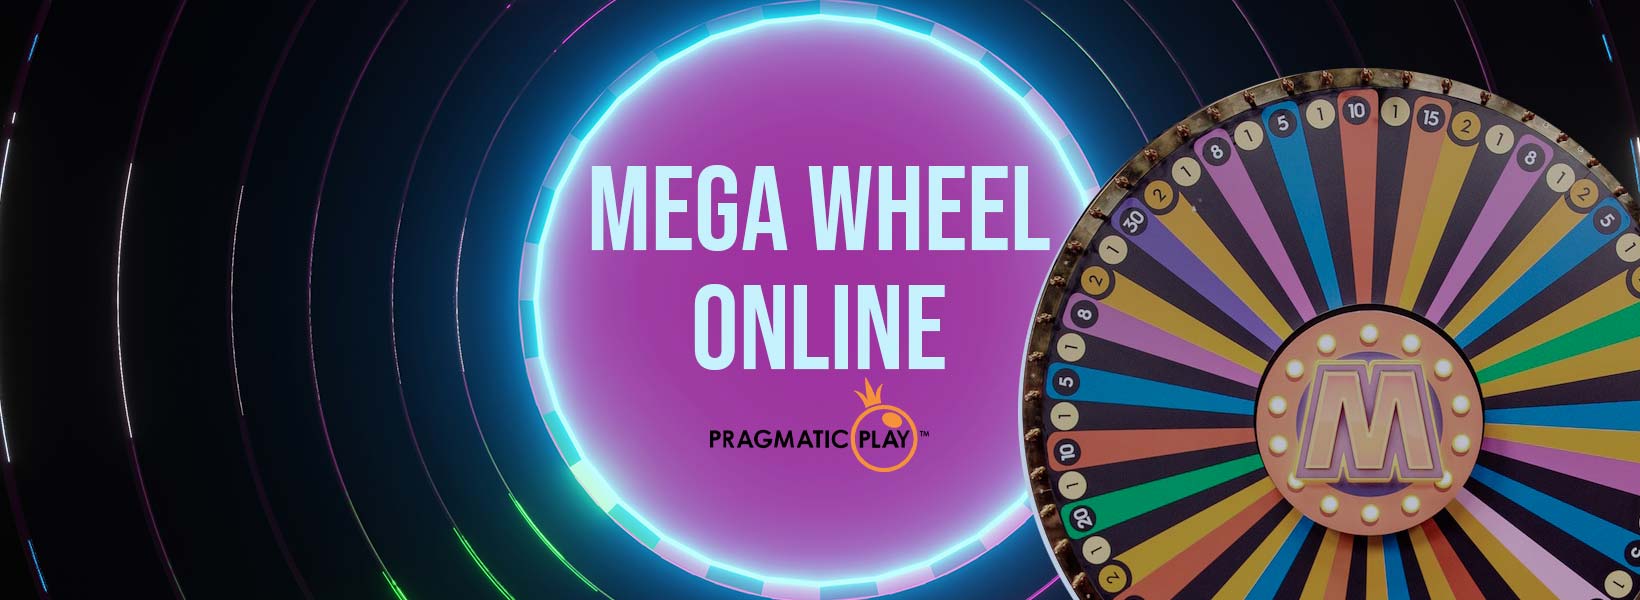 Mega Wheel online